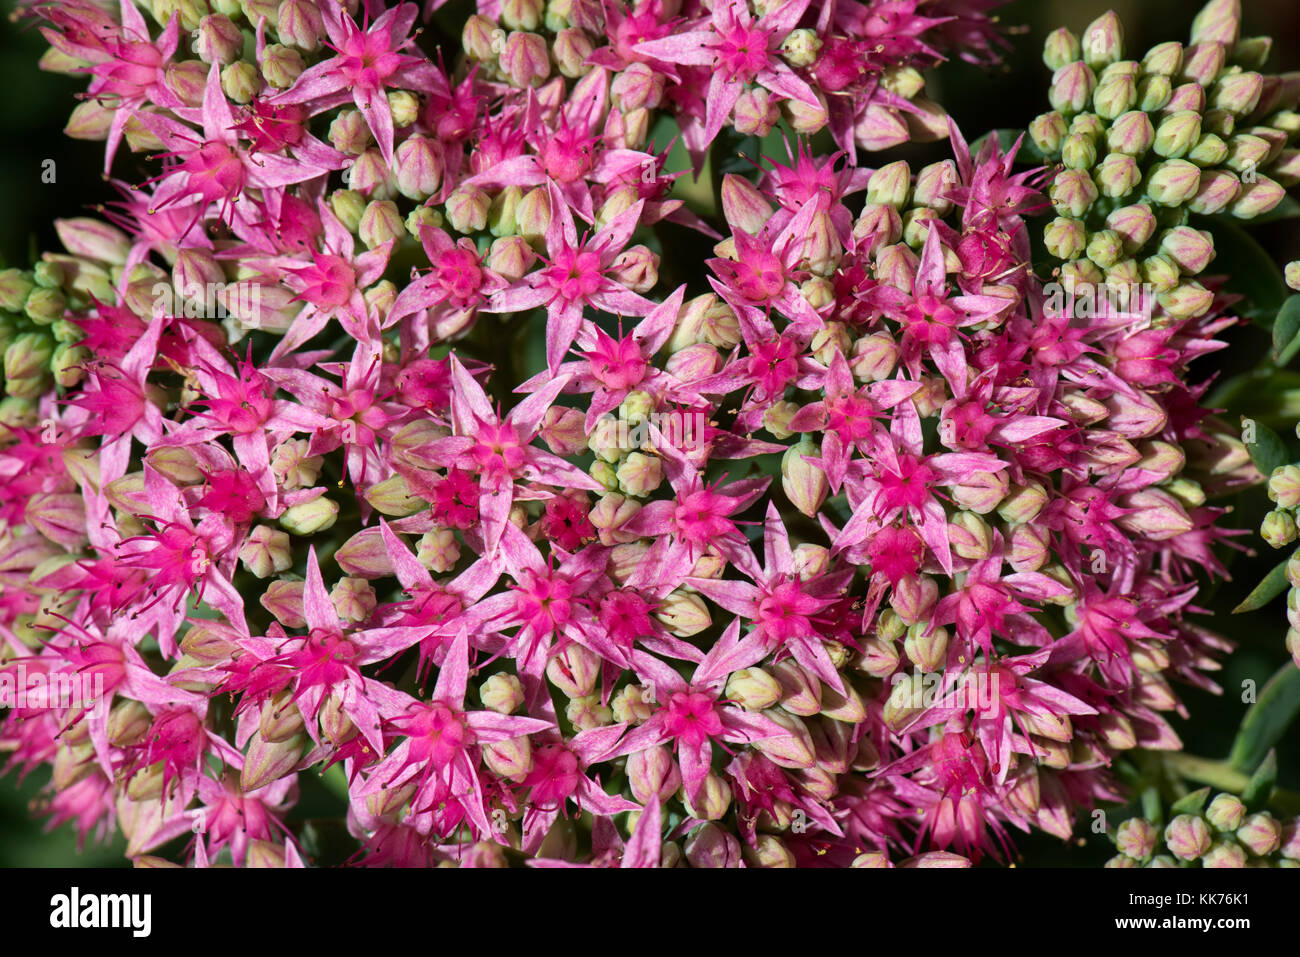 Sternförmige Orpinblüten, Hylotelephium spectabile „Carl“, eine saftige Zierpflanze, die im Spätsommer, August, blüht Stockfoto